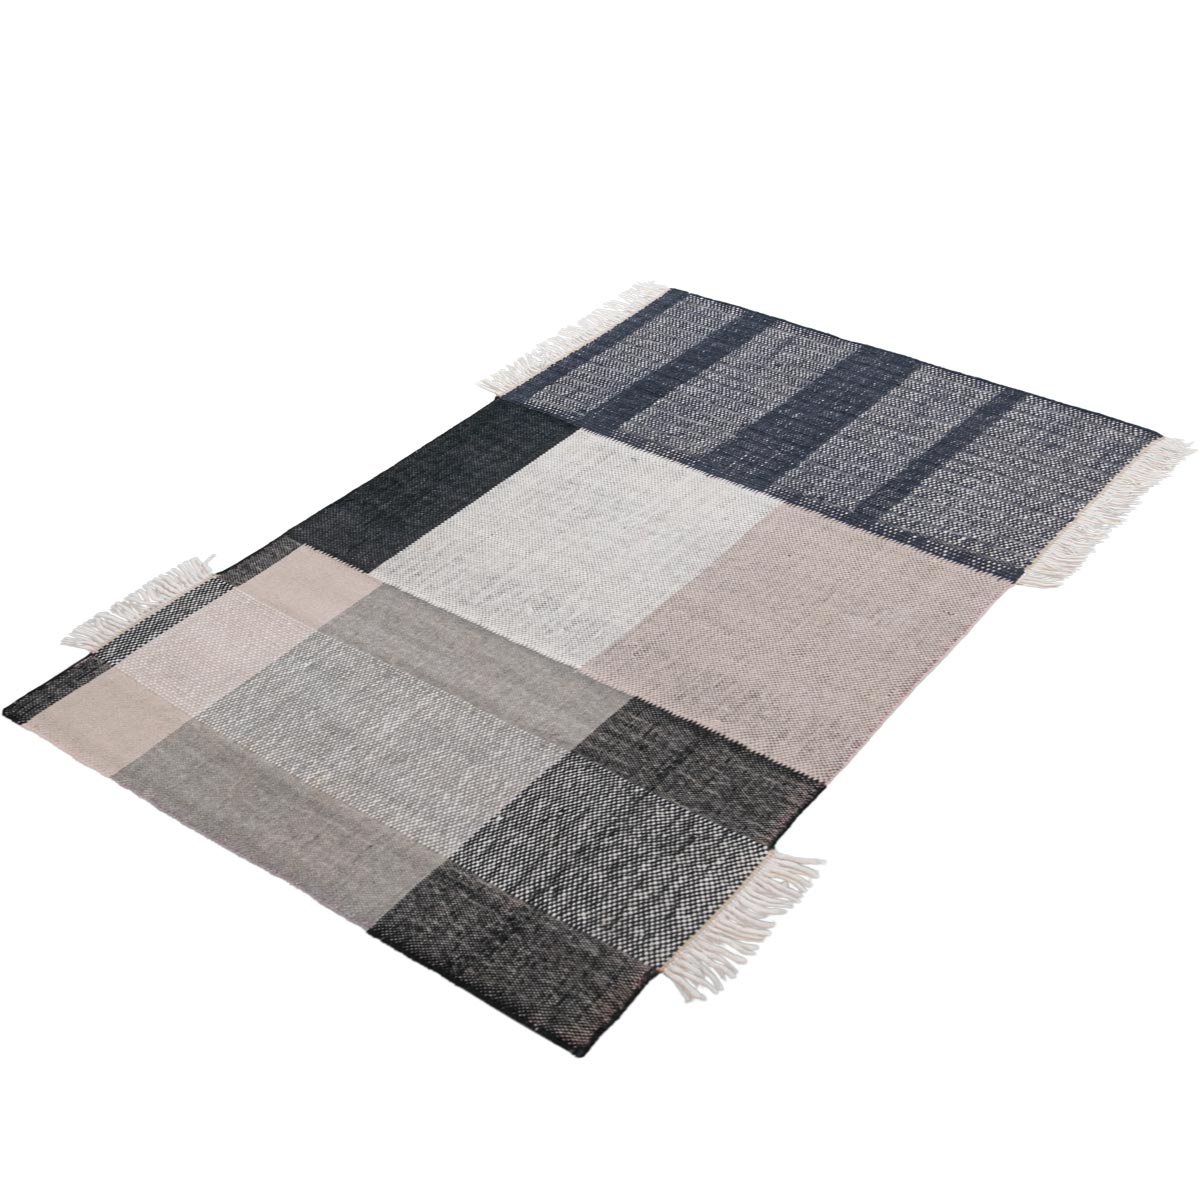 שטיח קילים סקנדינבי 21 שחור/ורוד/אפור עם פרנזים | השטיח האדום